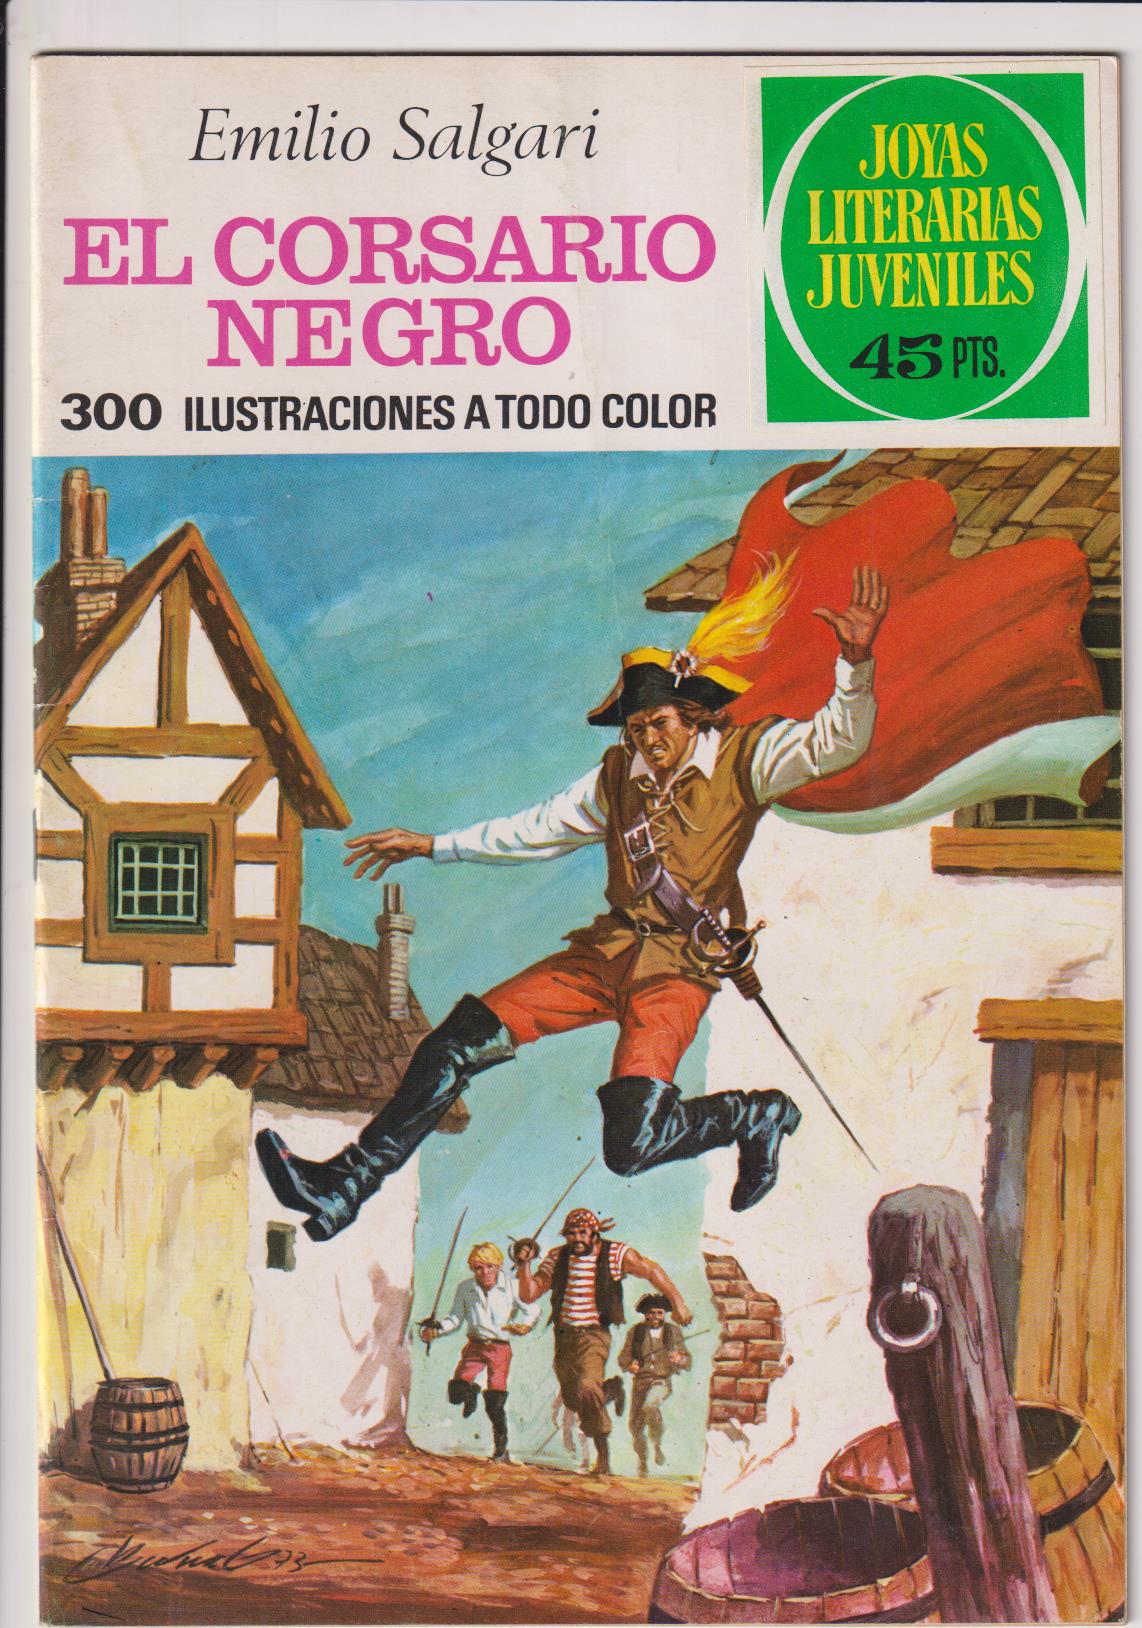 Joyas Literarias nº 95. El Corsario Negro. 2ª Edición Bruguera 1977